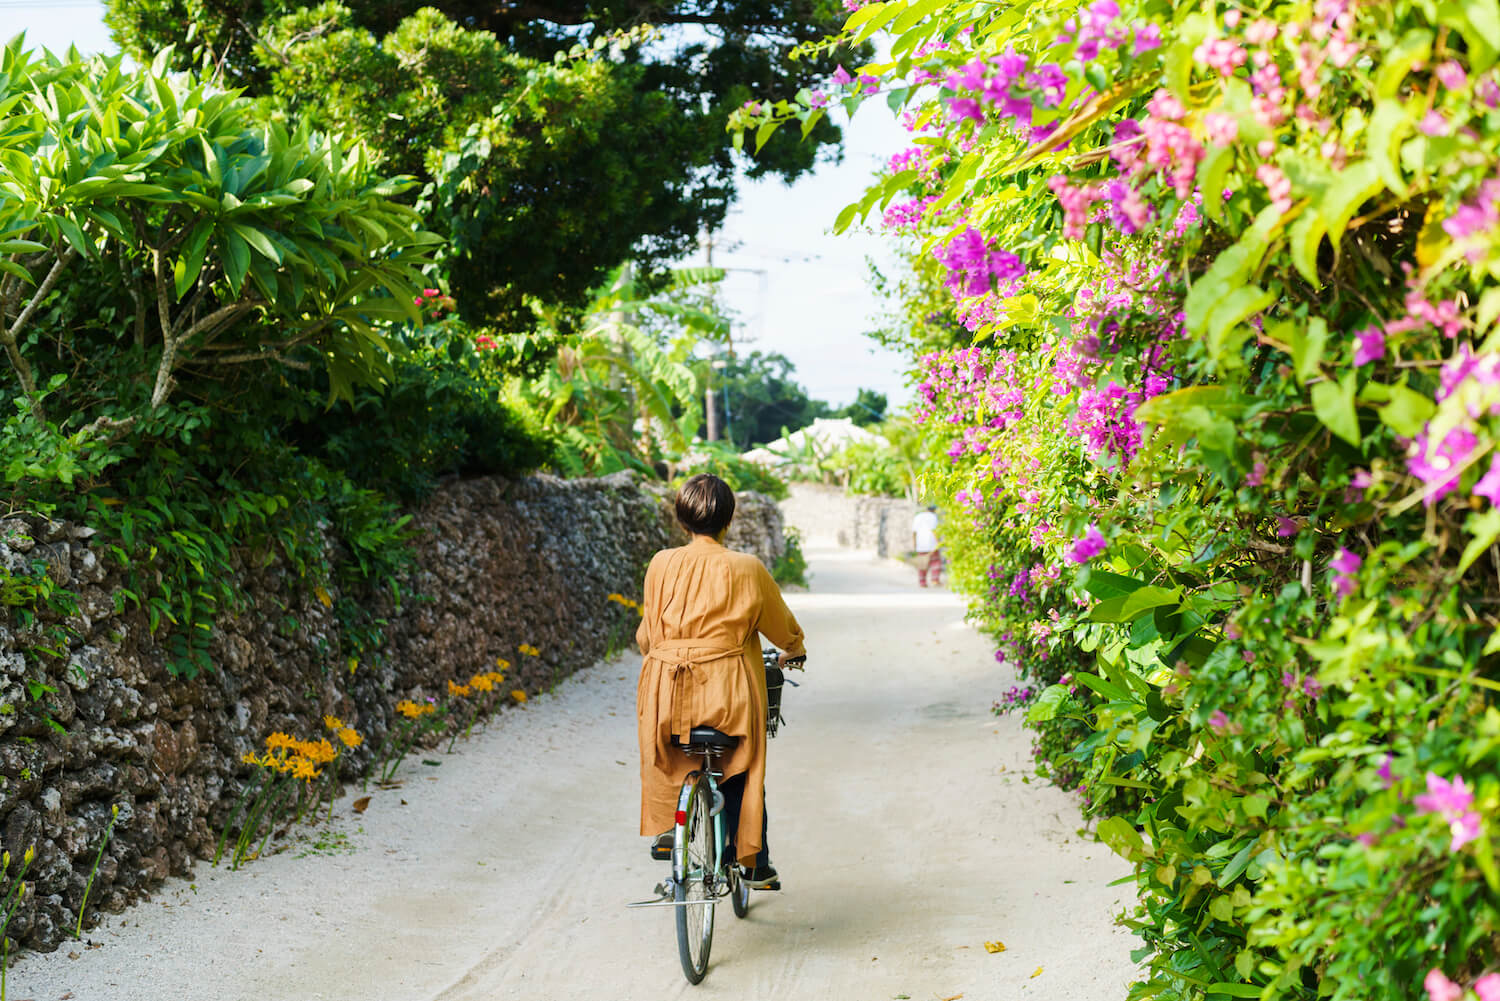 竹富島で暮らすように旅して 唯一無二の魅力を感じる 沖縄離島専門の観光情報サイト リトハク